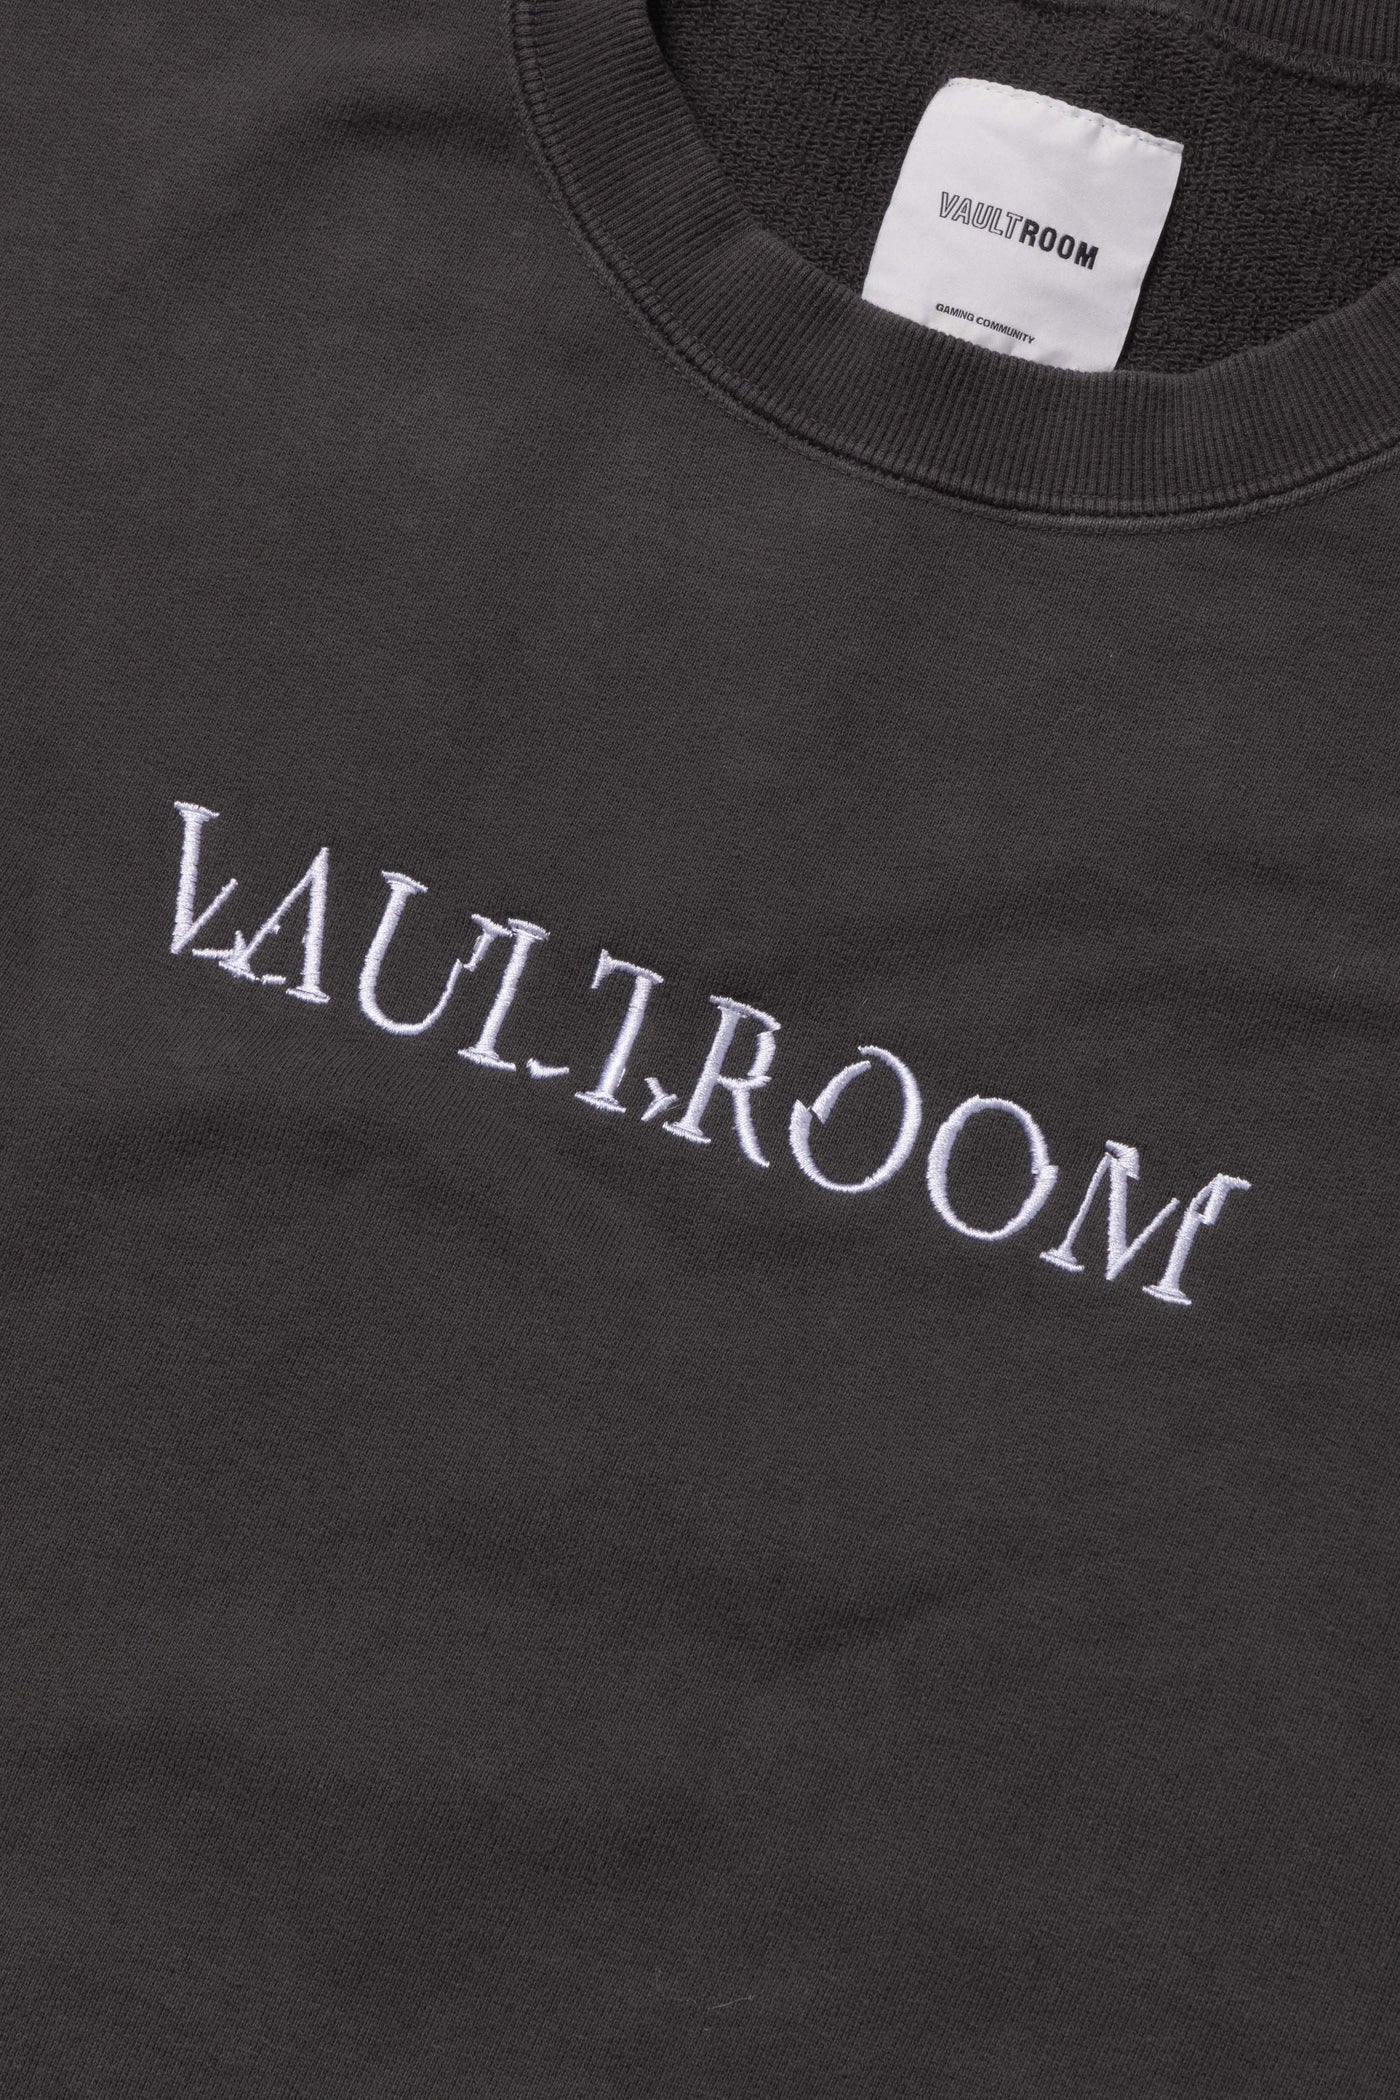 7,480円vaultroom CUTOFF VEST / CHARCOAL Lサイズ